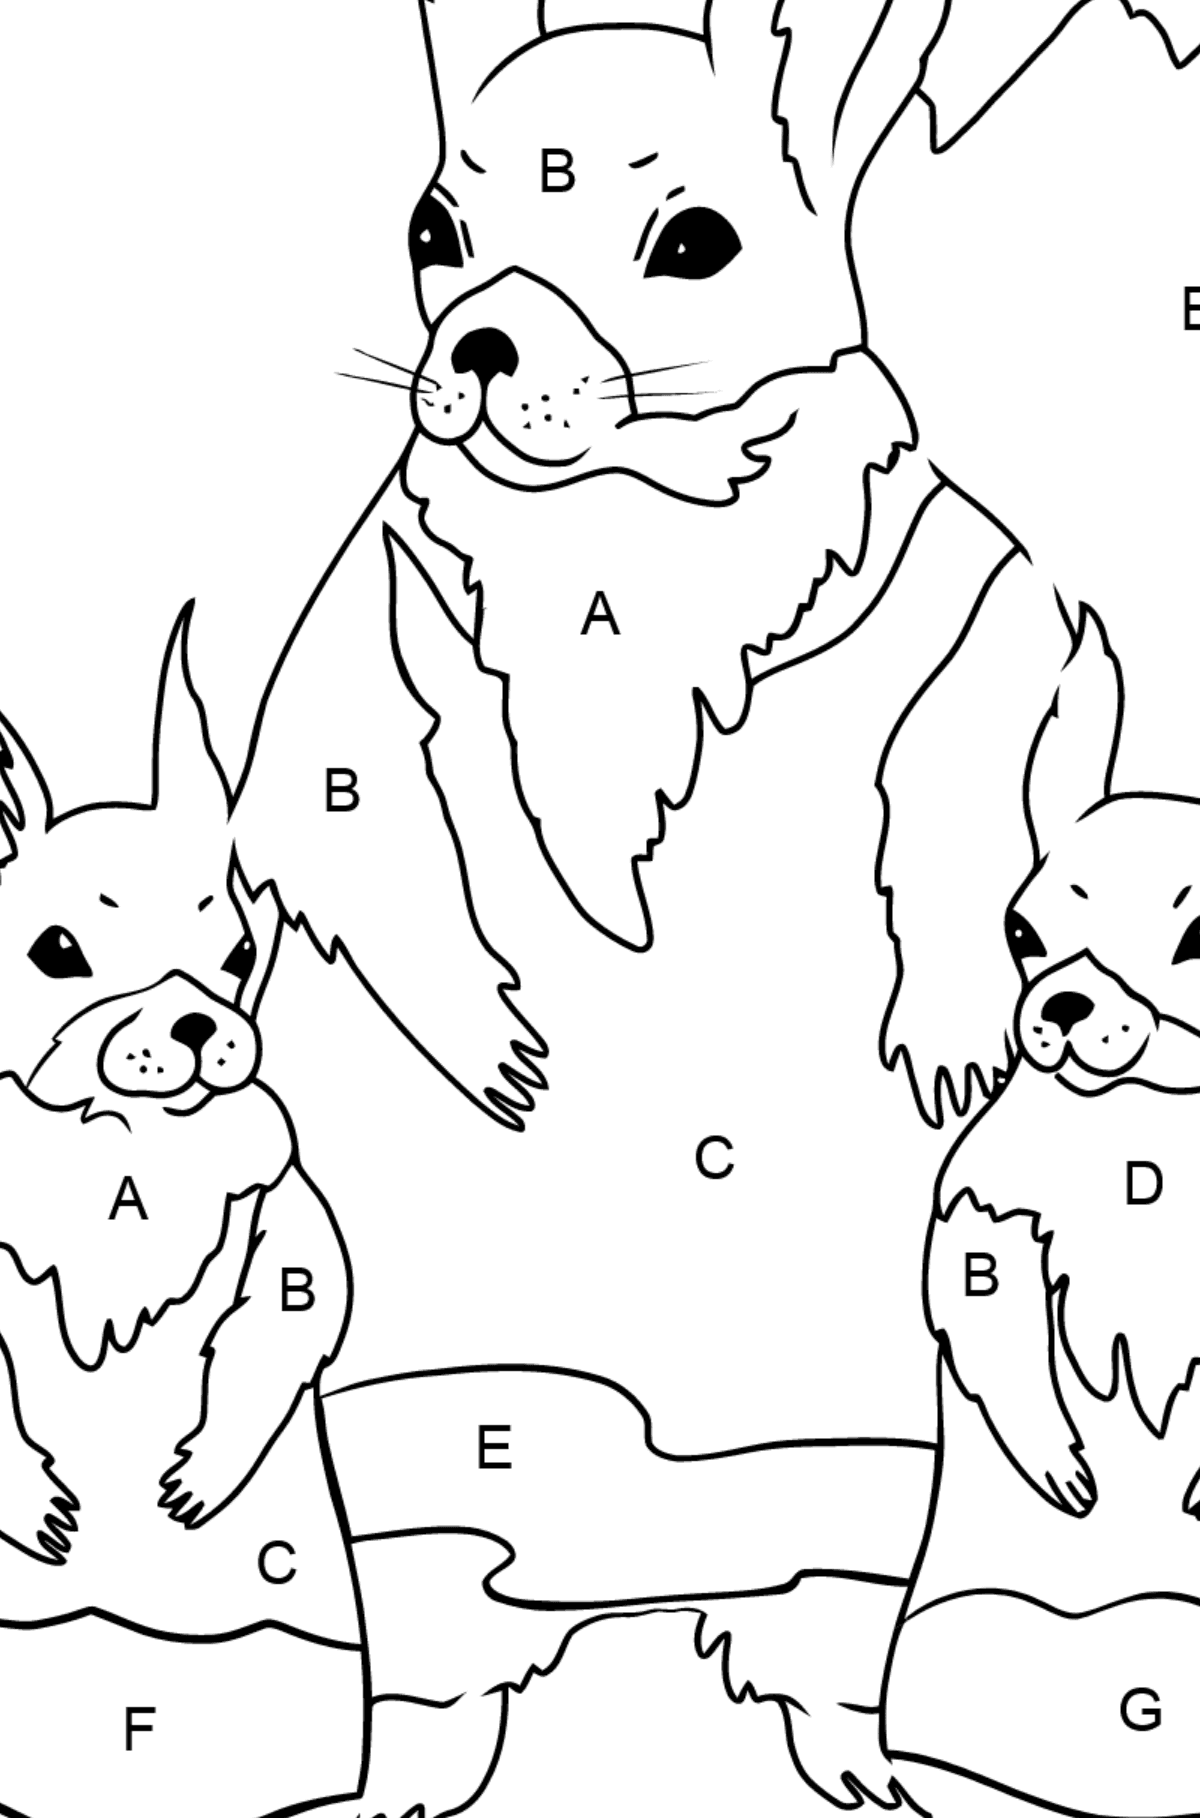 Coloriage - écureuil au printemps - Coloriage par Lettres pour les Enfants